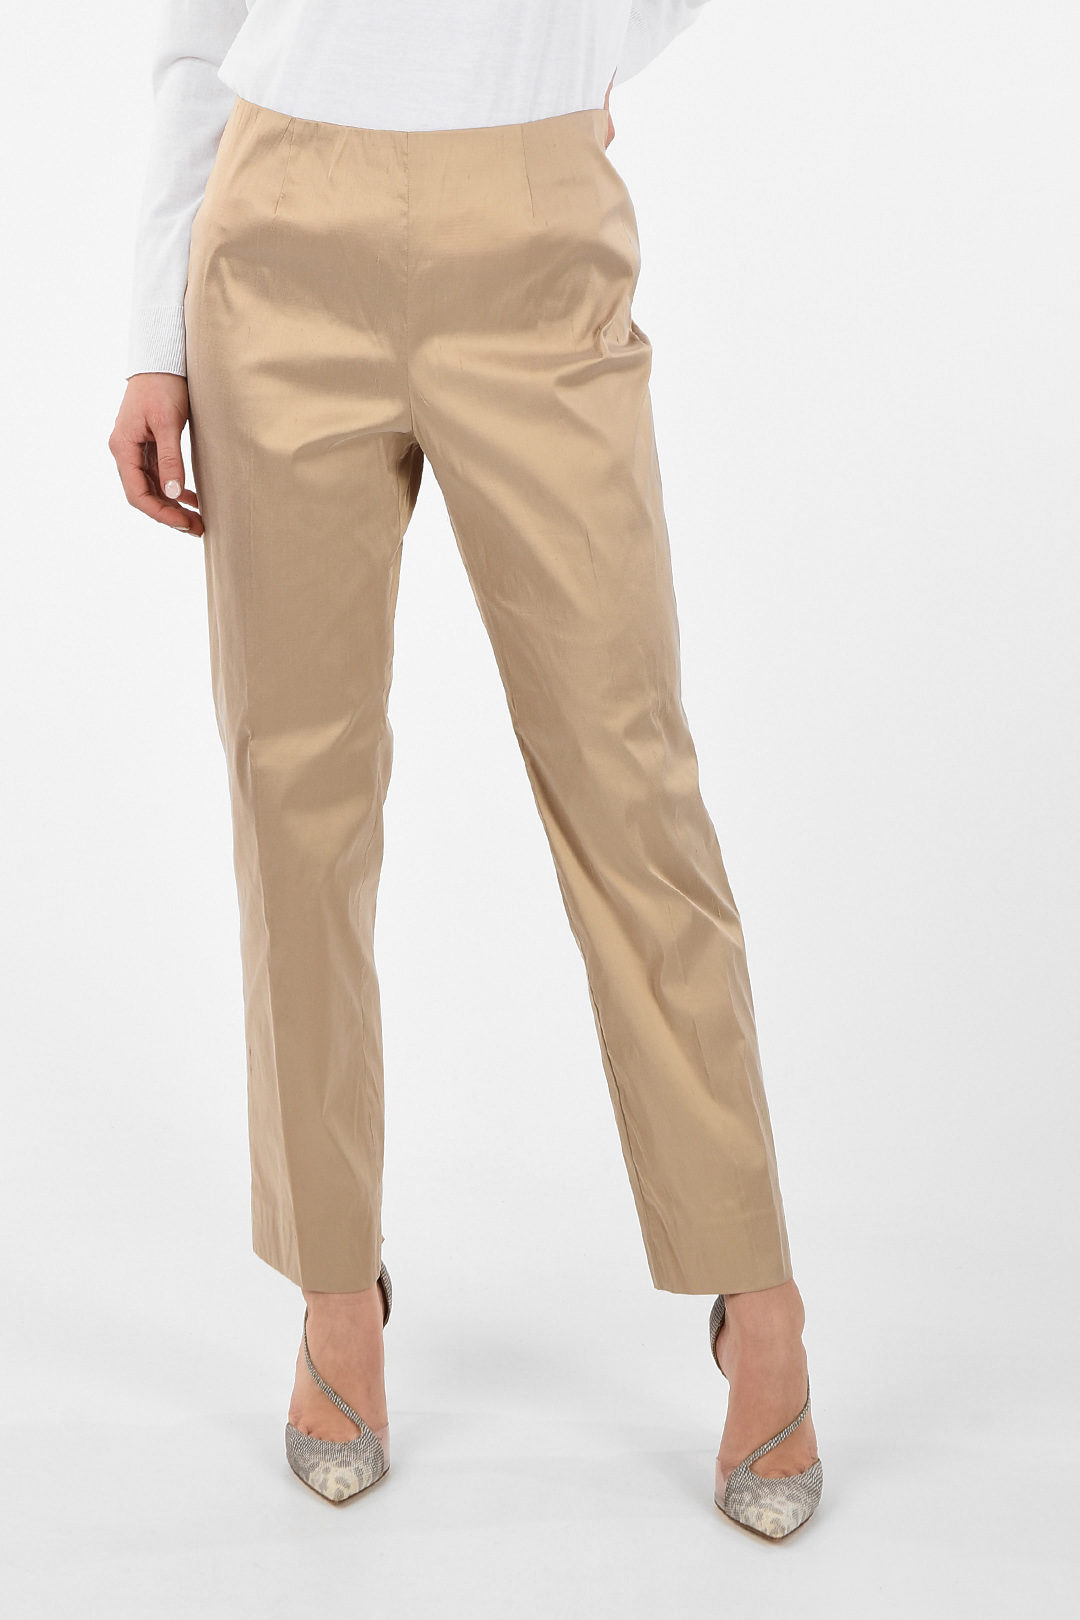 Metradamo silk side-zip fastening pants women - Glamood Outlet